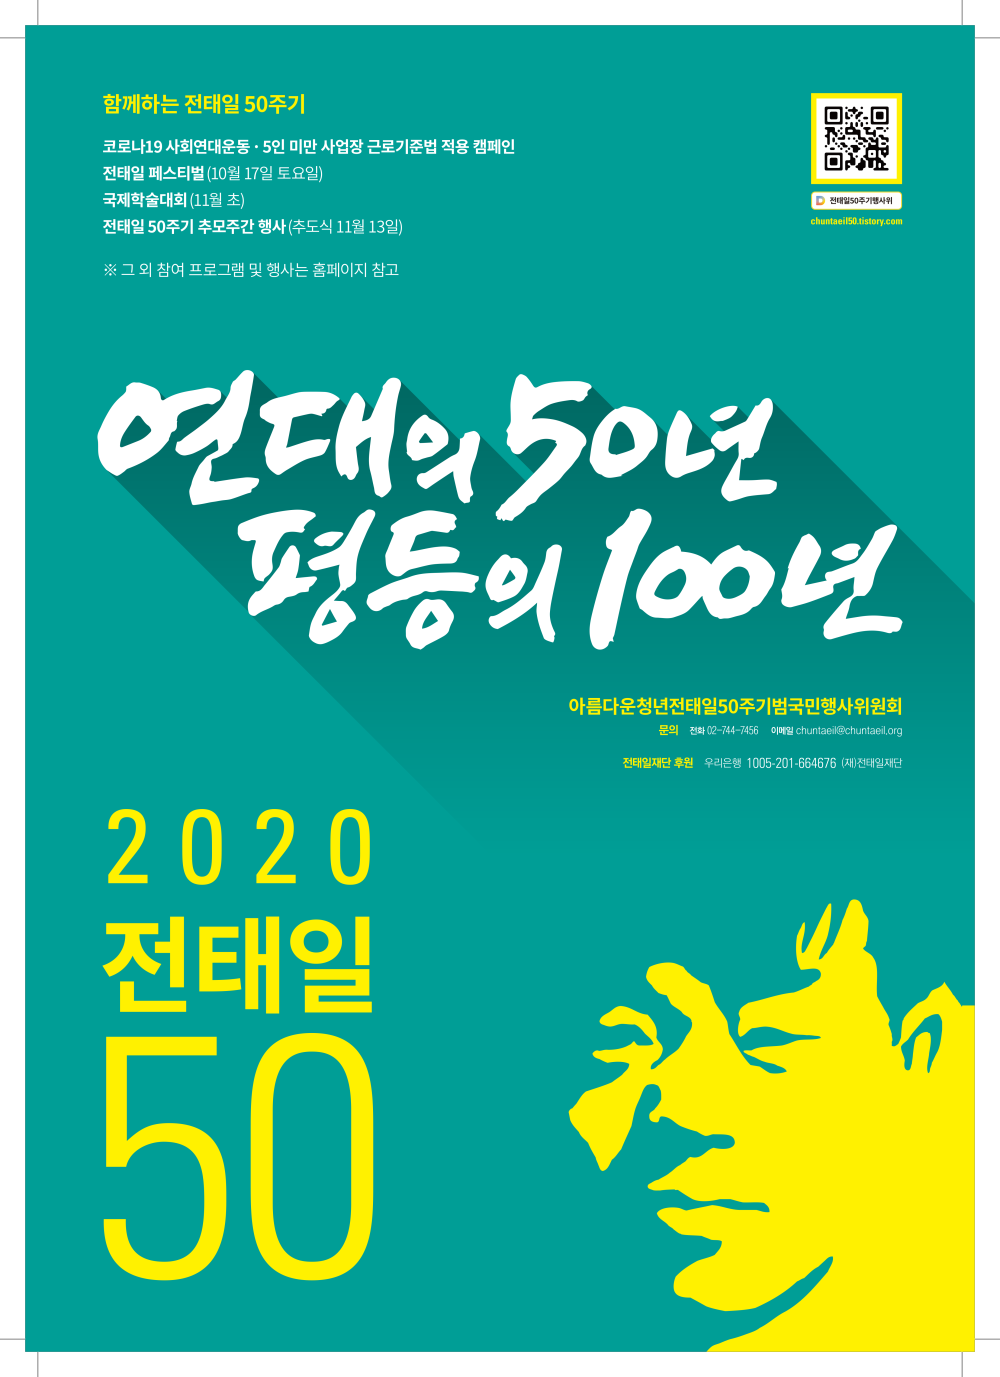 수정됨_2020_전태일50주기_포스터_최종.png